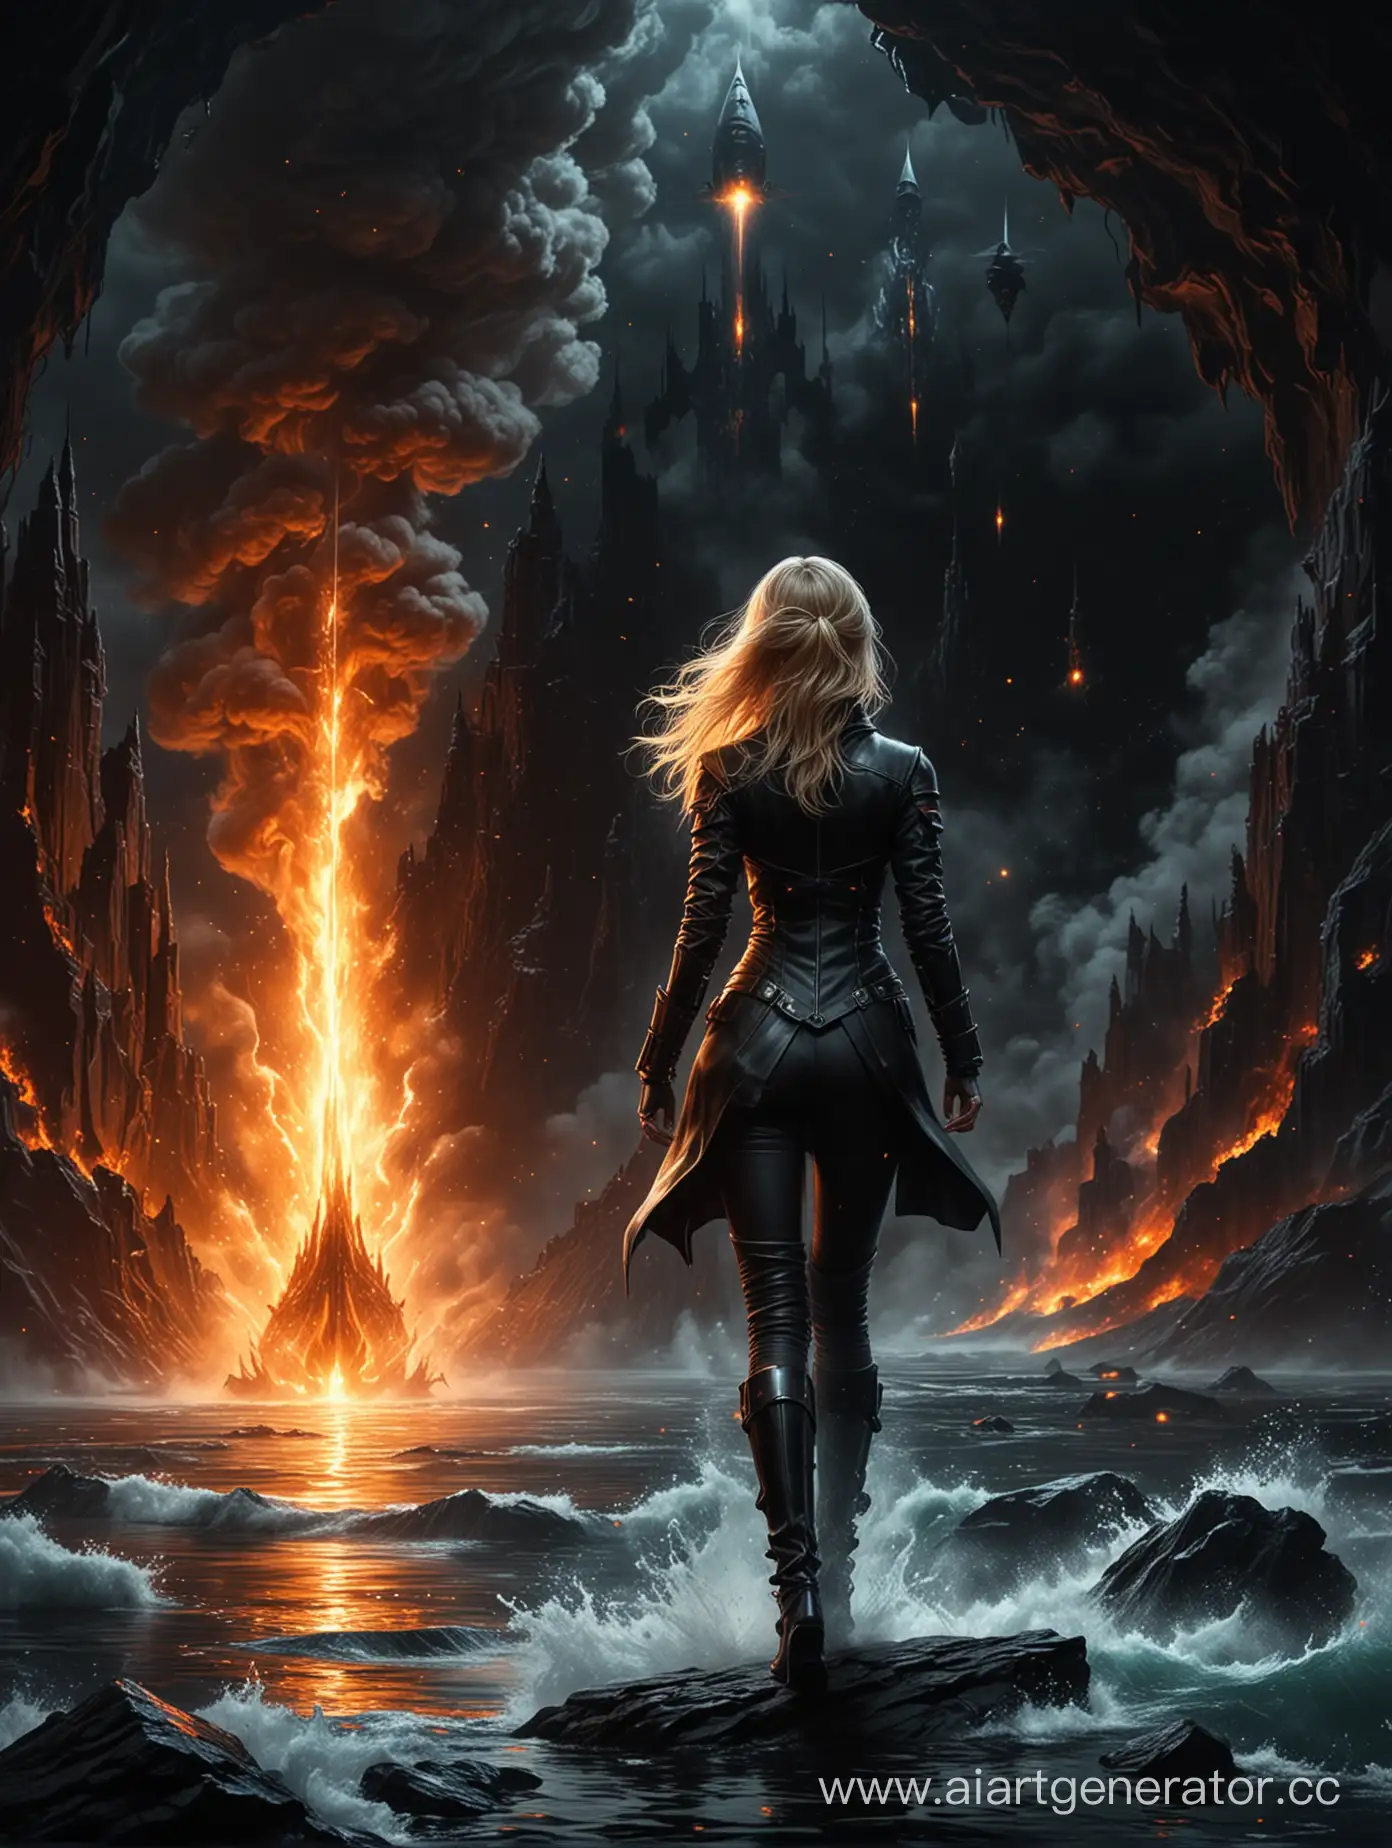 blonde girl, fire wizard, on a black background in flames человека в черном прикиде (антагониста) на краю бездной пропасти.
Он стоит неподвижно, смотря на космический корабль, который парит над водой